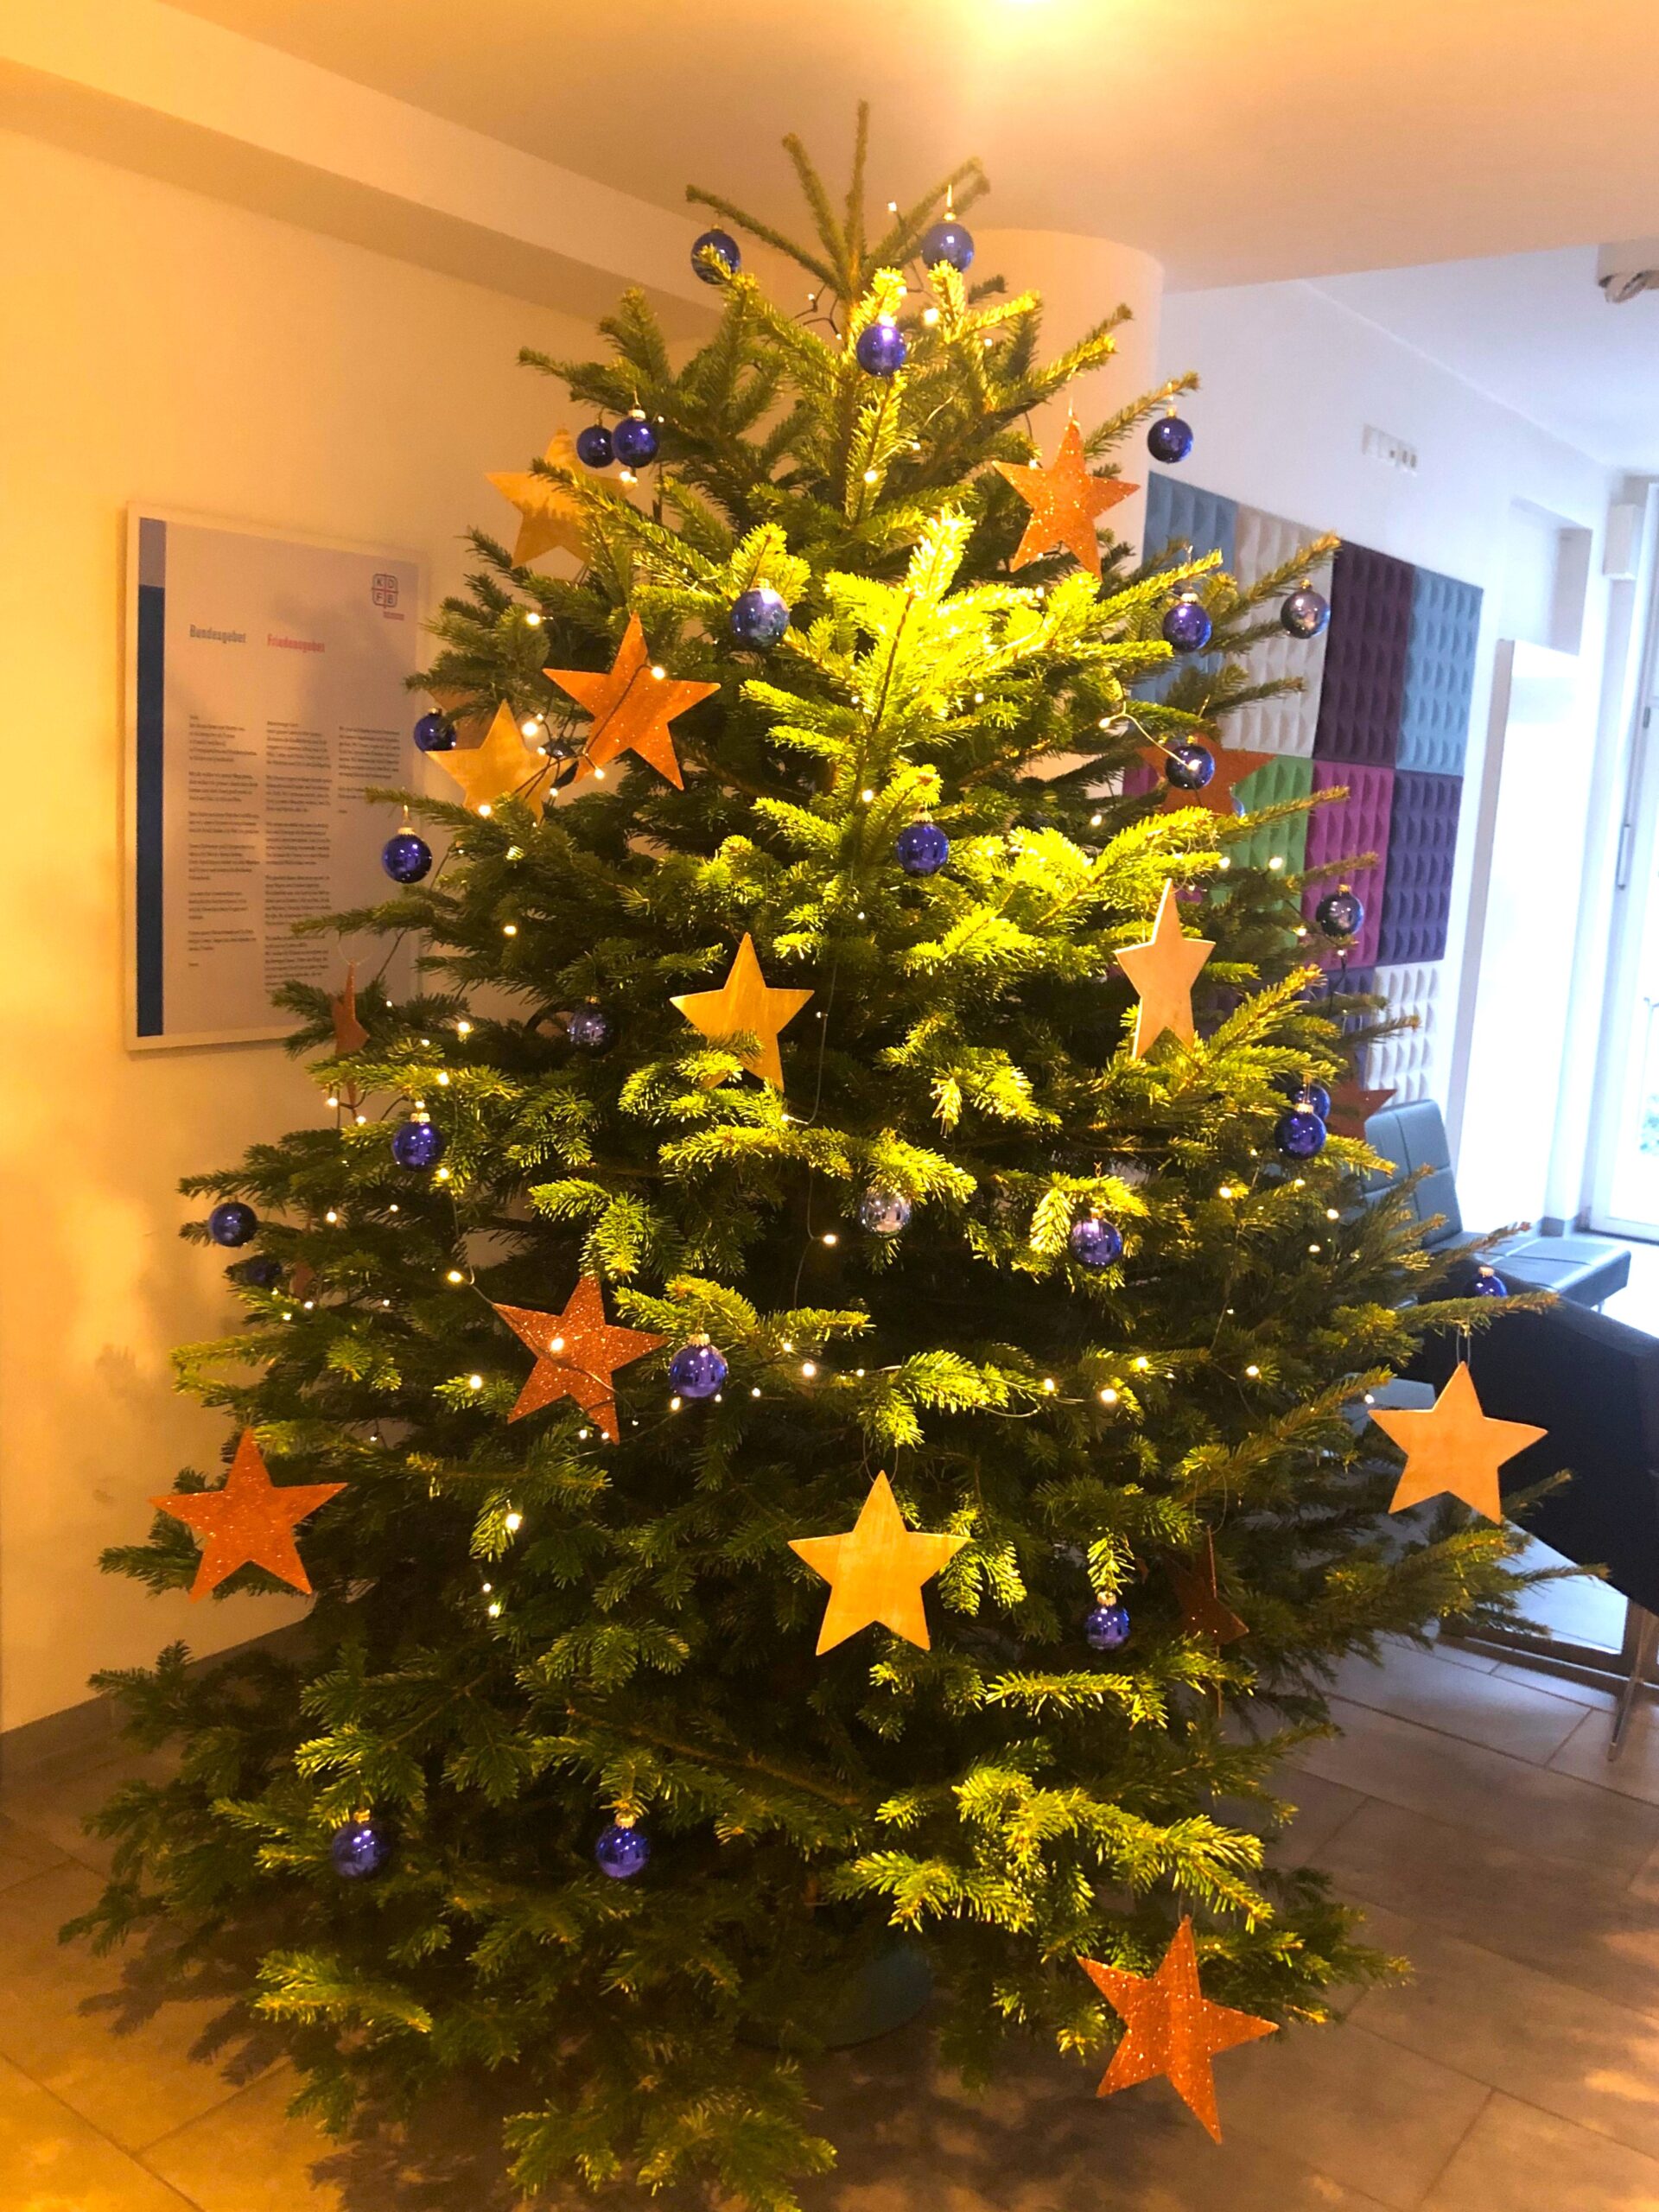 Zu sehen ist der Weihnachtsbaum im Foyer des Hauses Helene Weber. Er ist geschmückt mit blauen Kugeln, großen goldenen Pappsternen und einer Lichterkette.